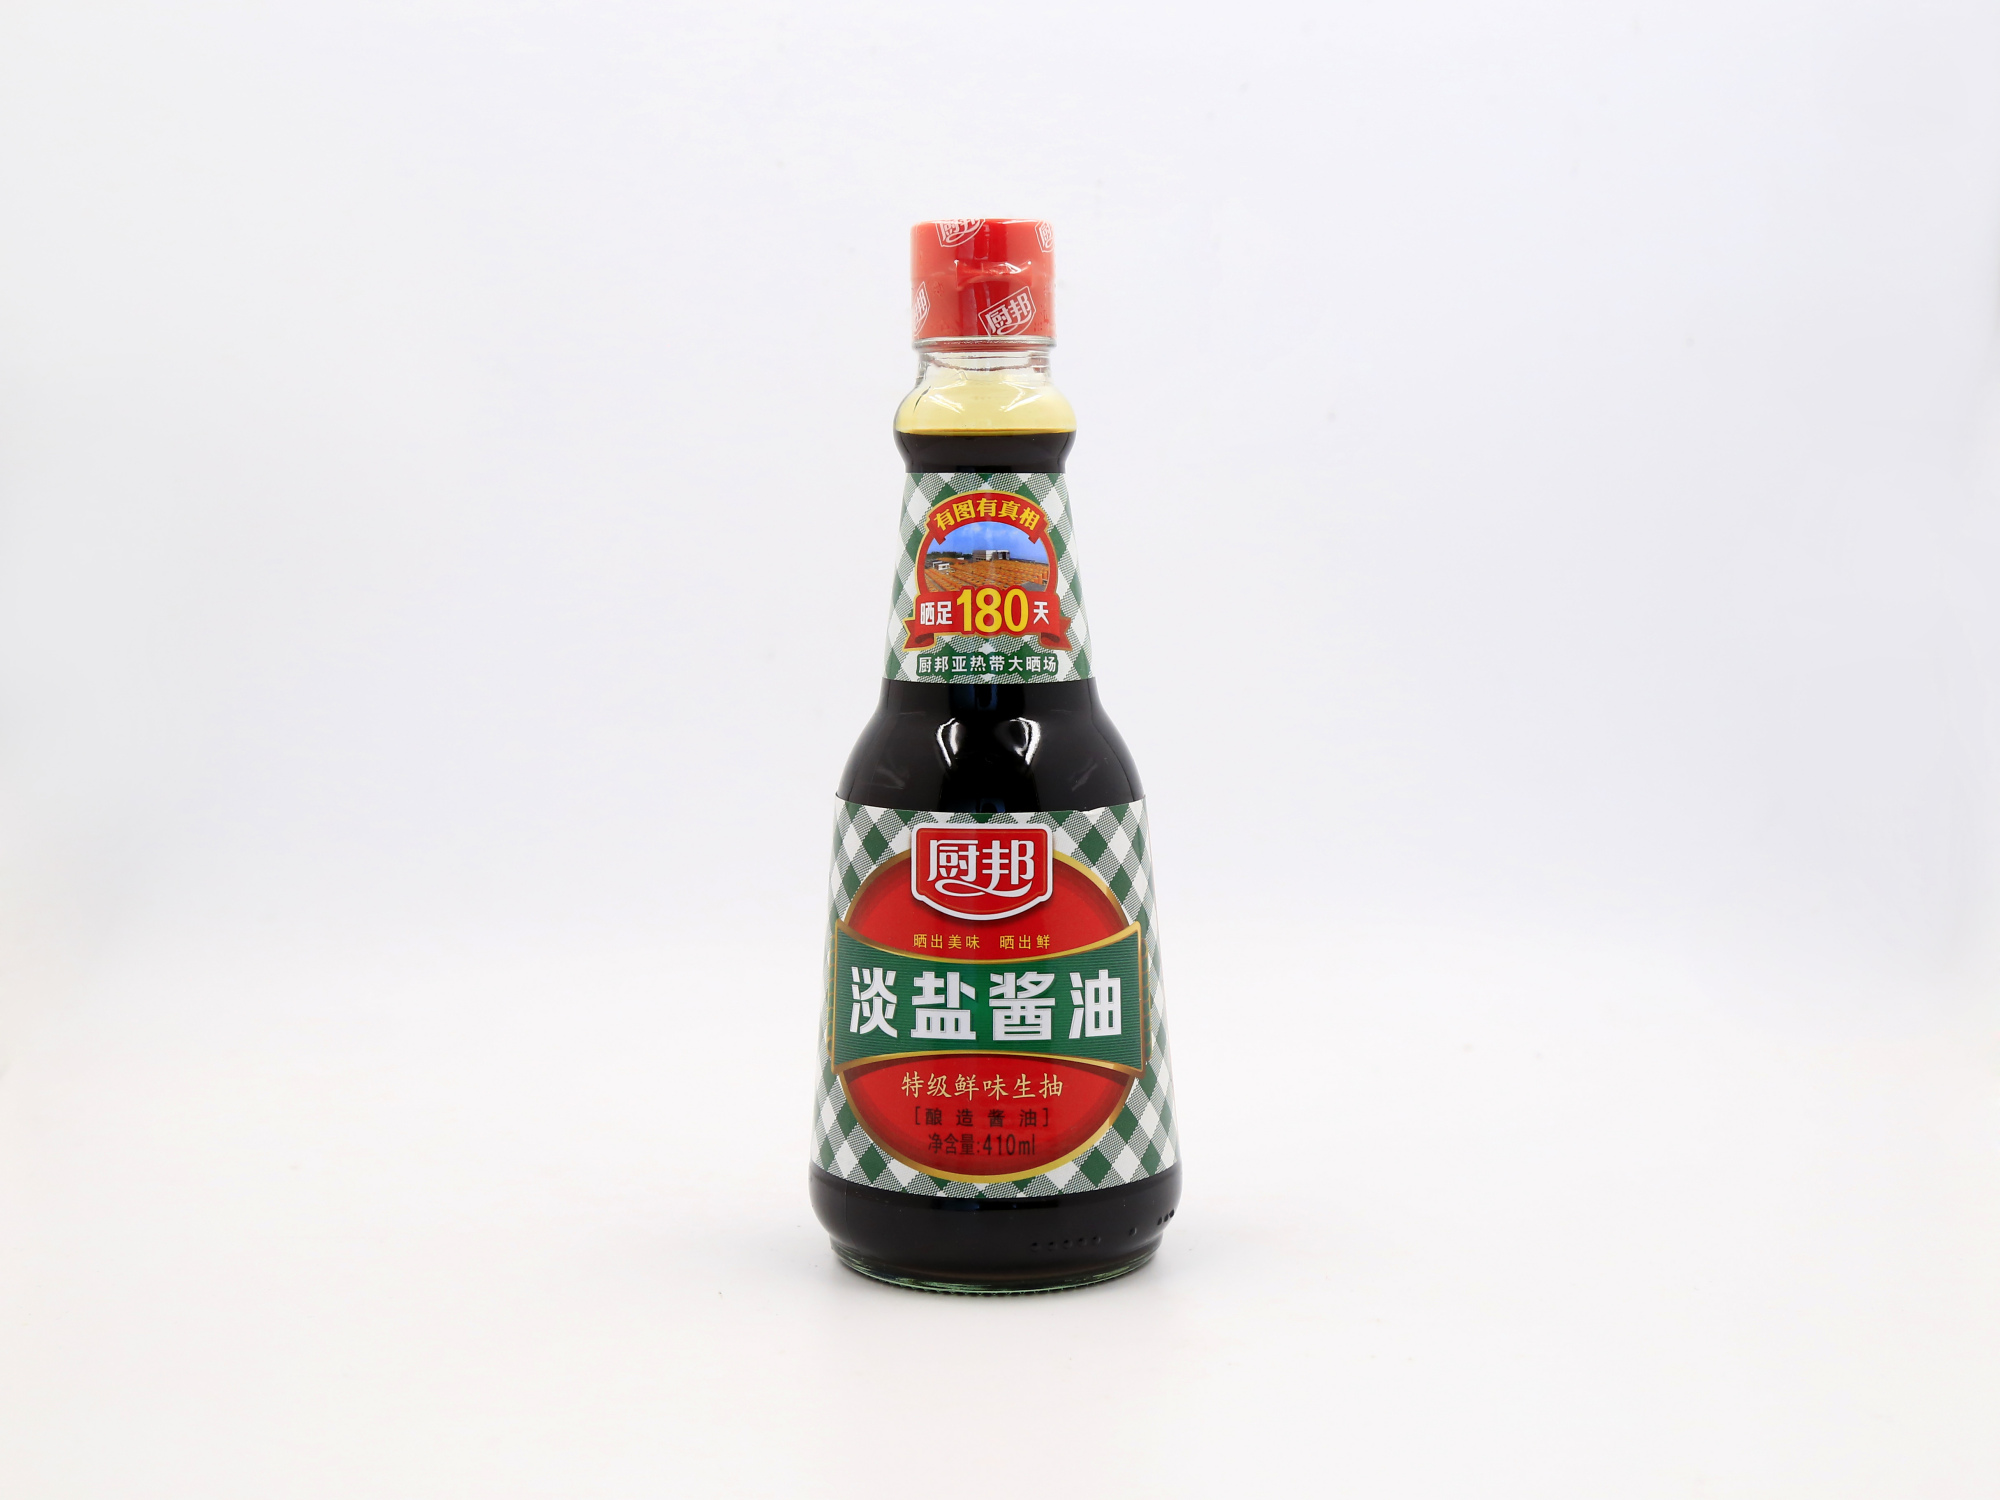 欣和 六月鲜上海红烧酱油 1升 - Weee!